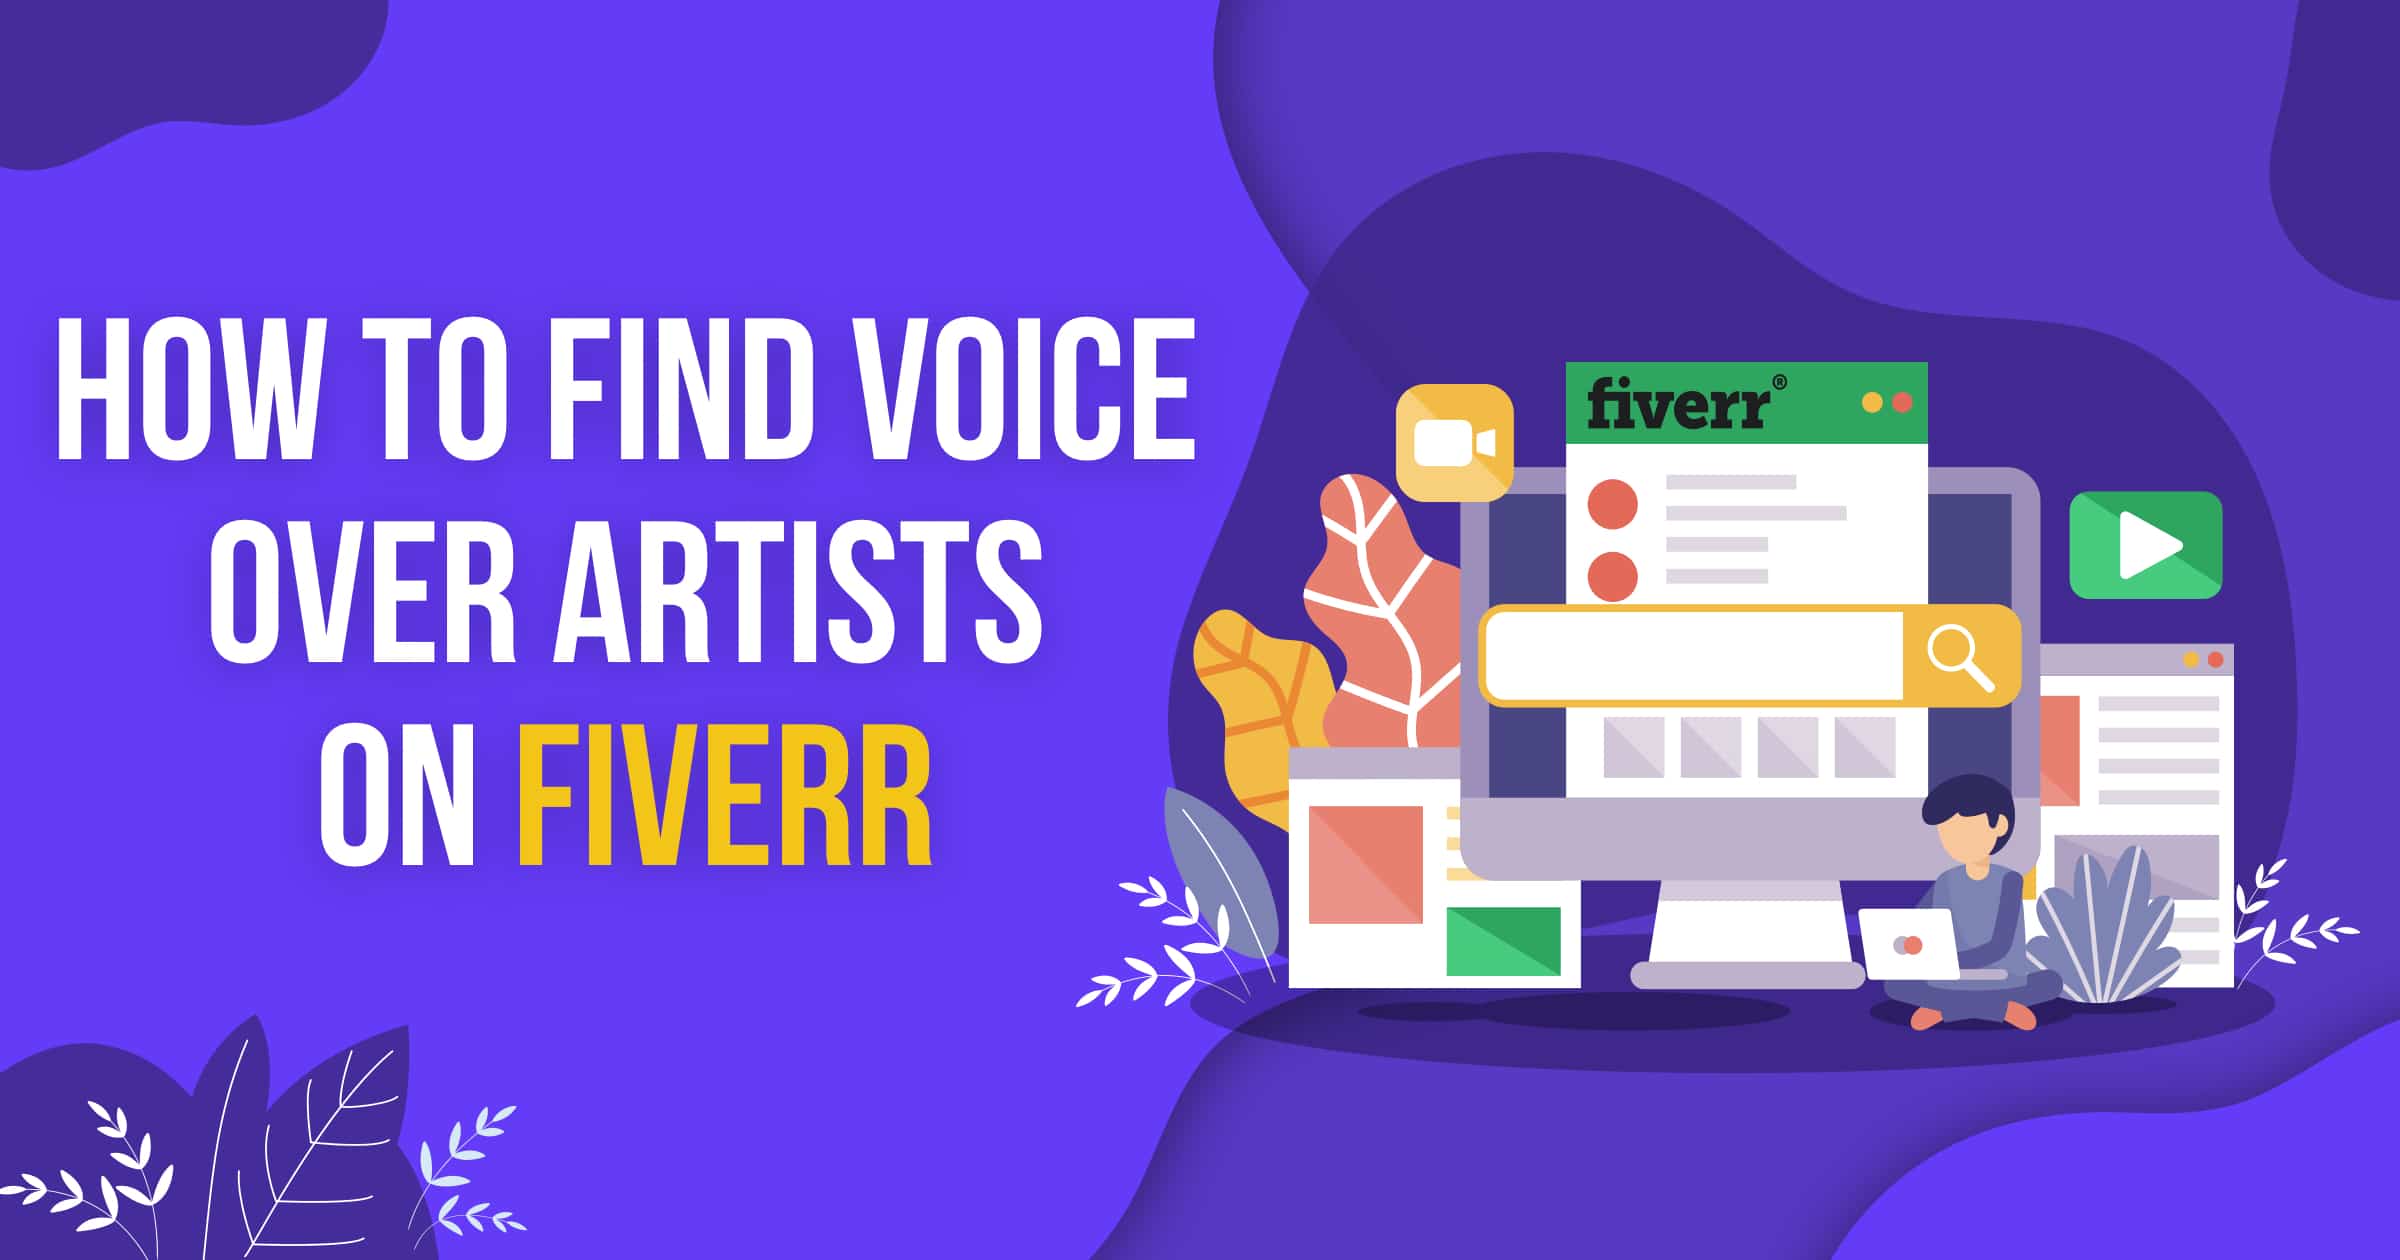 Voice Over Pete Fiverr - Fiverr Voice Over Tips